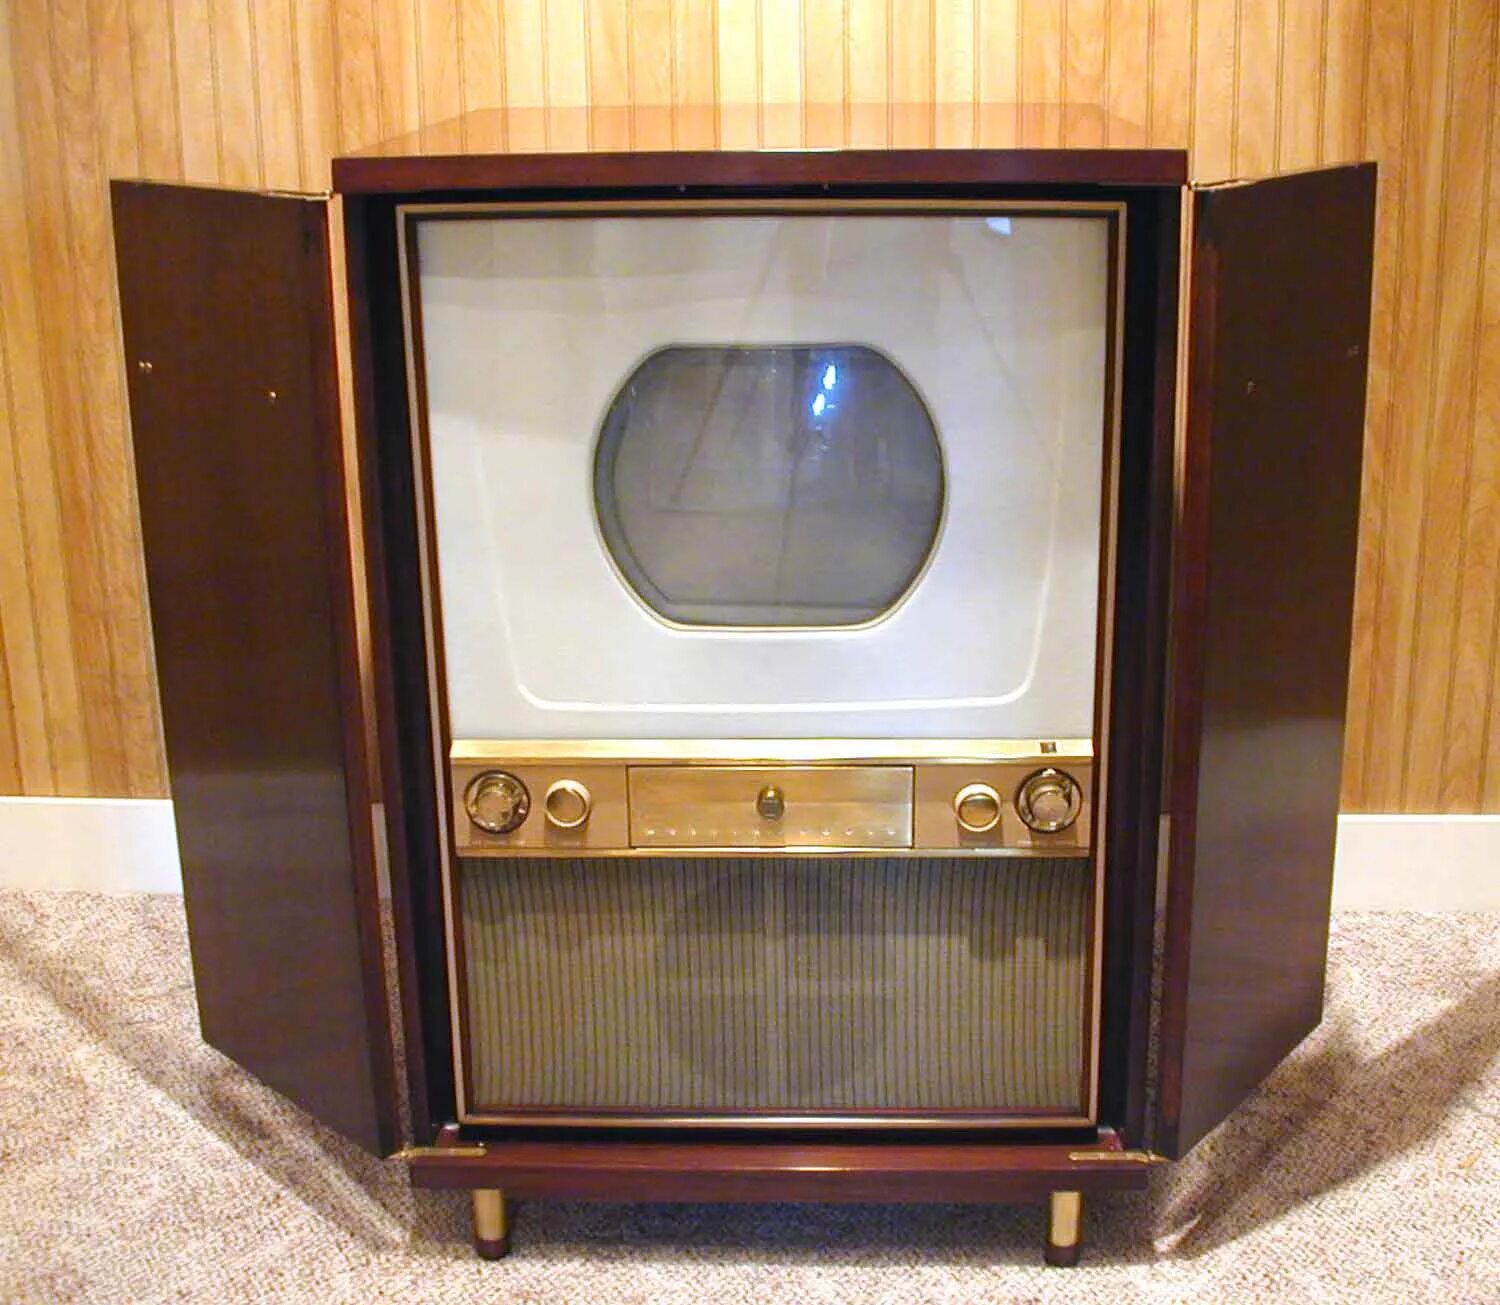 Куплю цветной телевизор. Westinghouse h840ck15. Первый цветной телевизор 1954. Телевизор Авангард 1954. Цветной телевизор Зенит 1954.